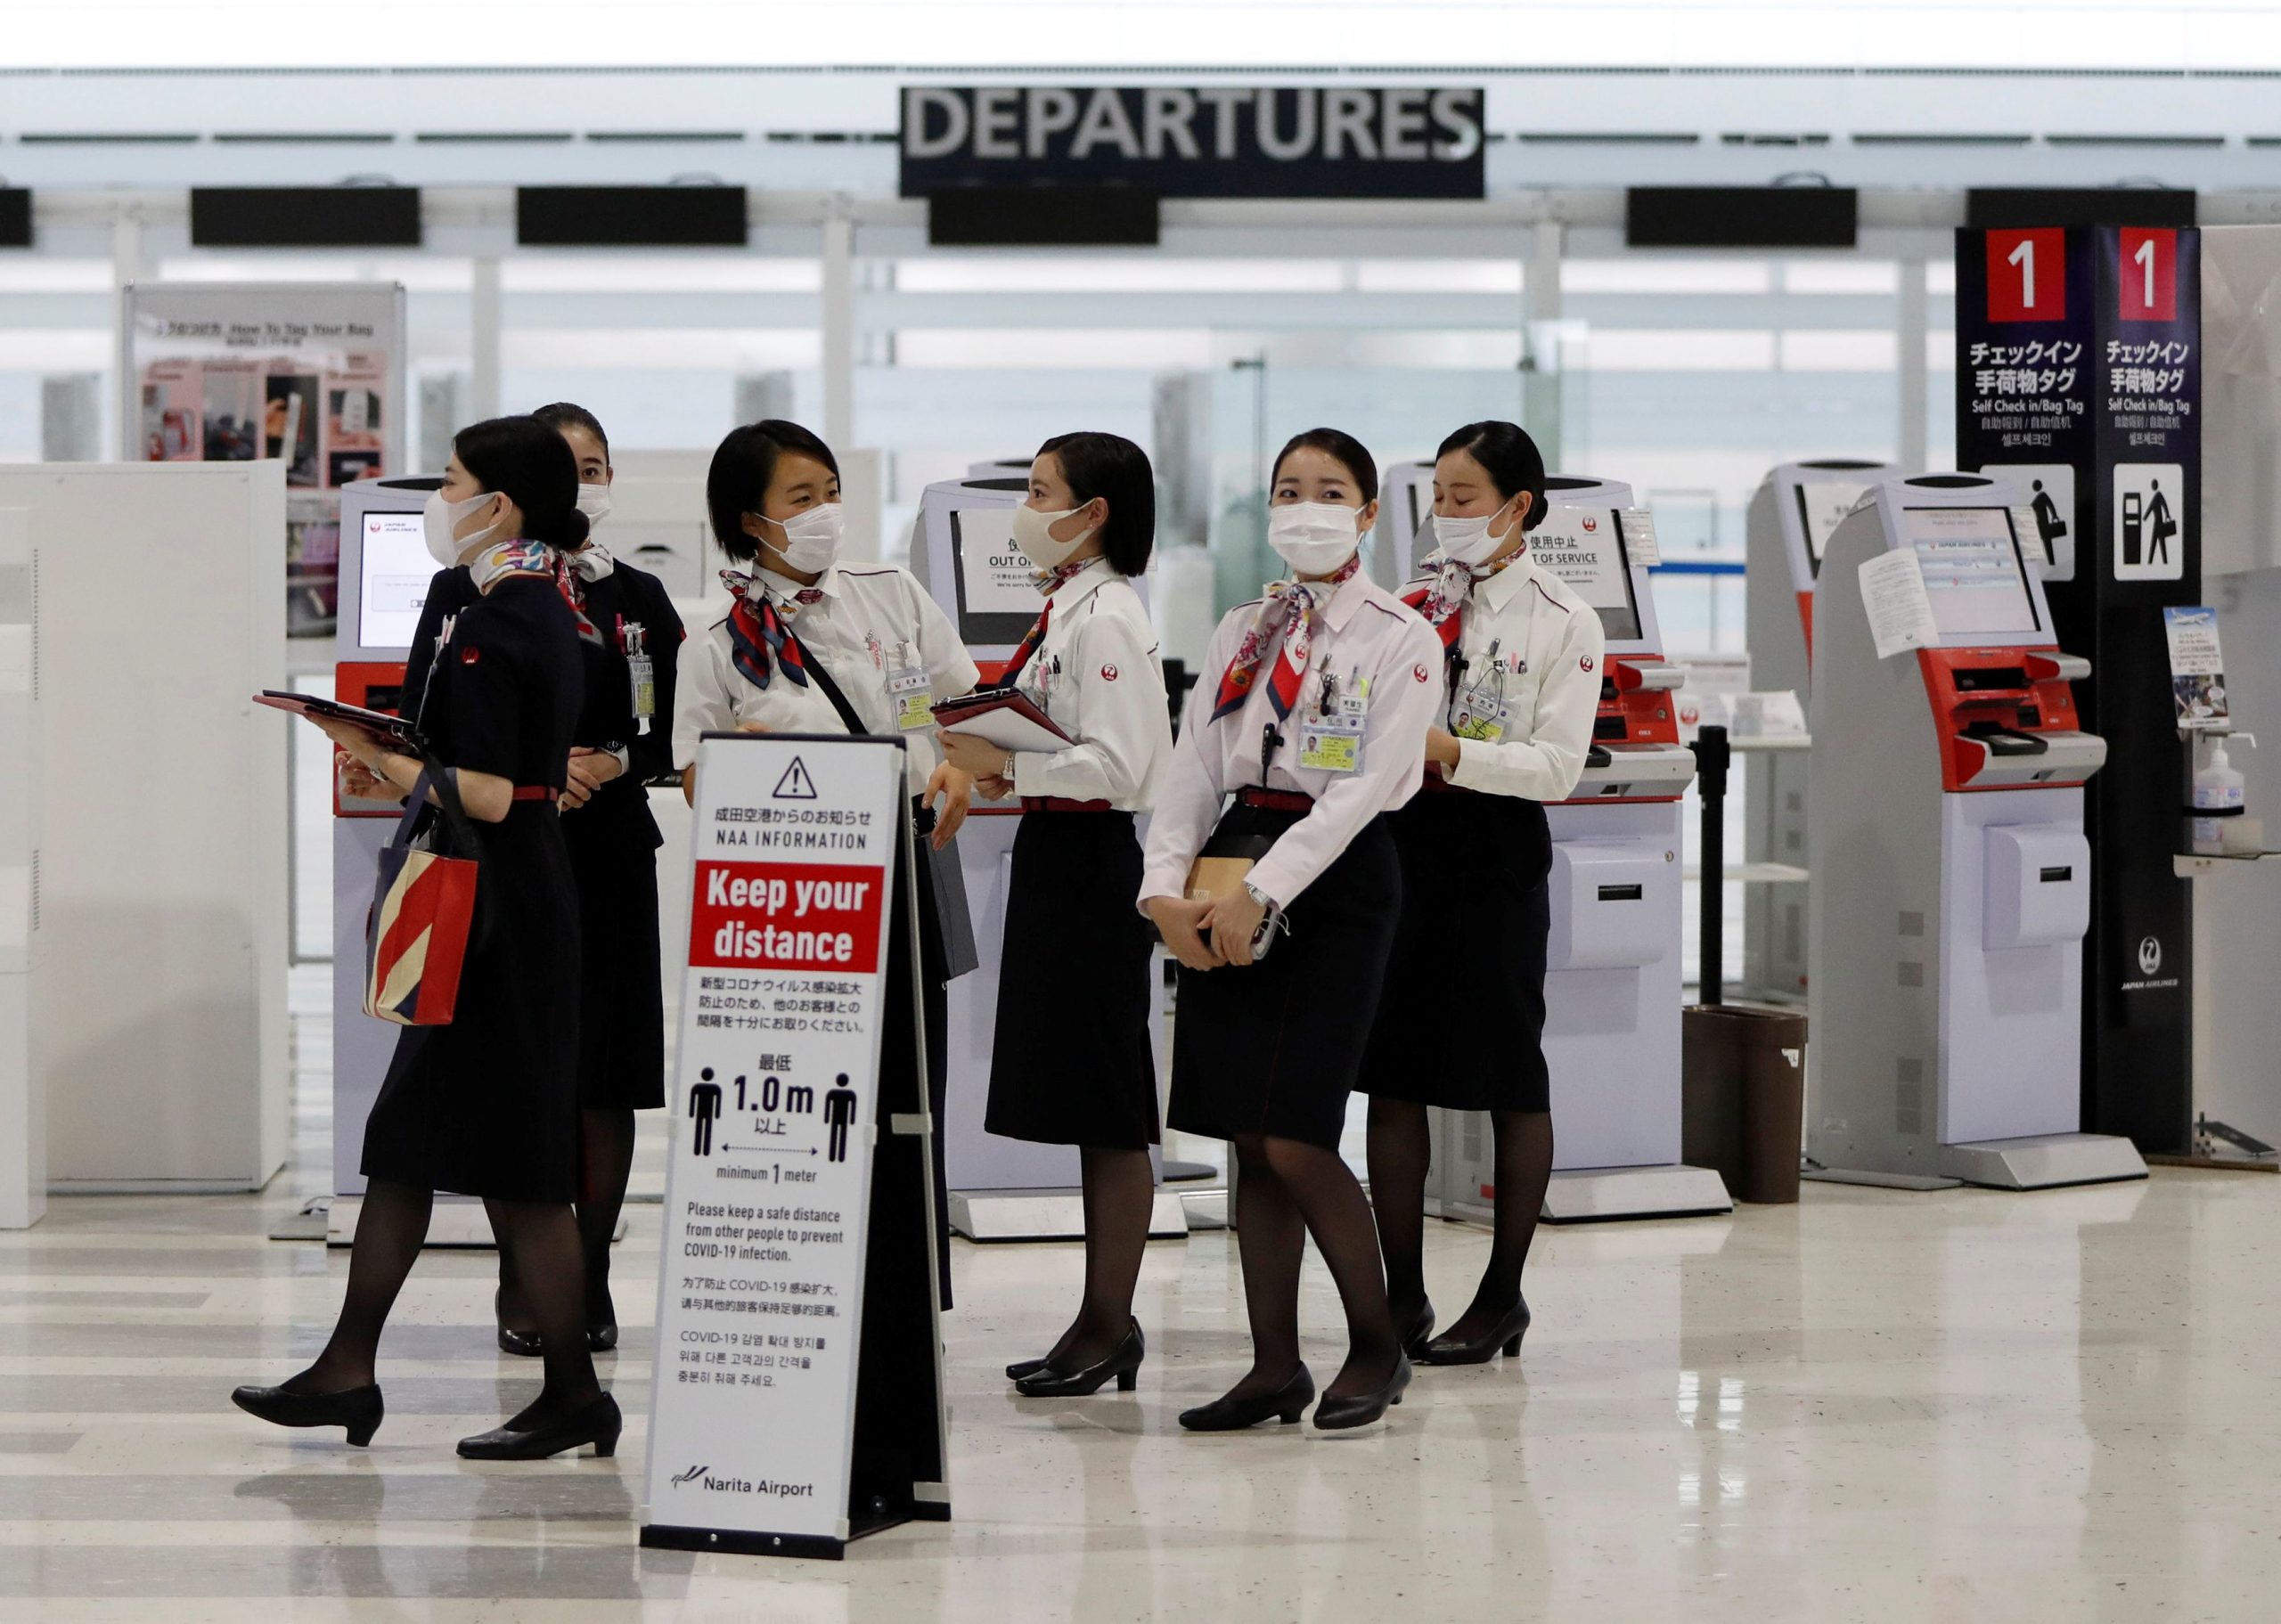 Ιαπωνία: Υποδέχεται ξανά τουρίστες με κλειστά καταστήματα και ελλείψεις εργαζομένων στα ξενοδοχεία